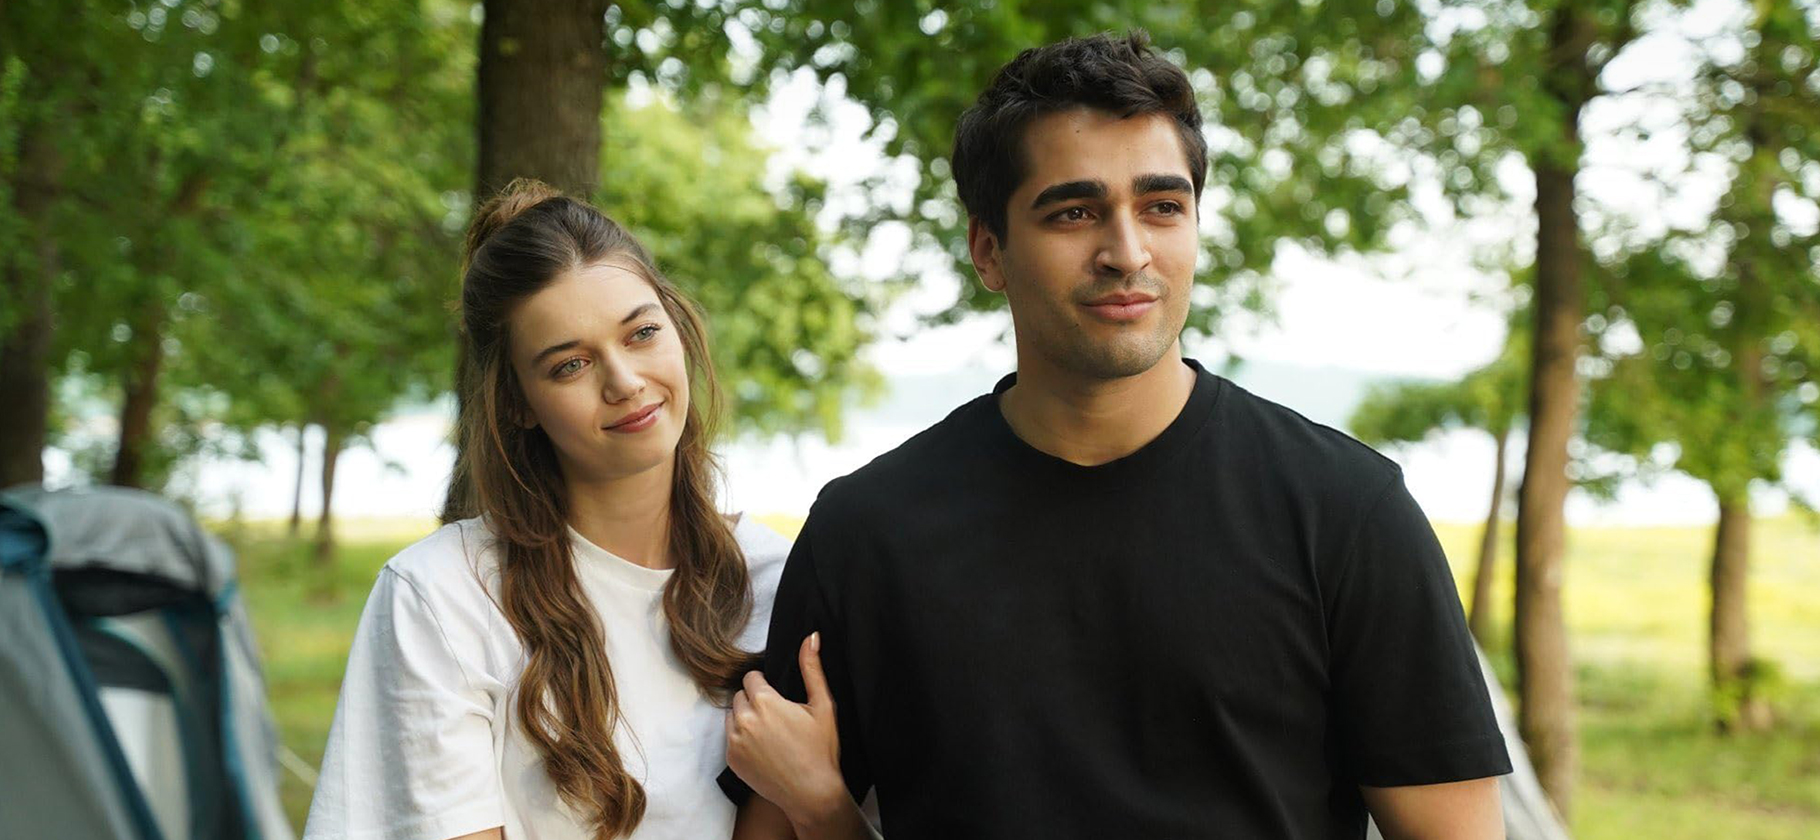 «Зимородок» — стоит ли смотреть популярный турецкий сериал о вынужденной свадьбе